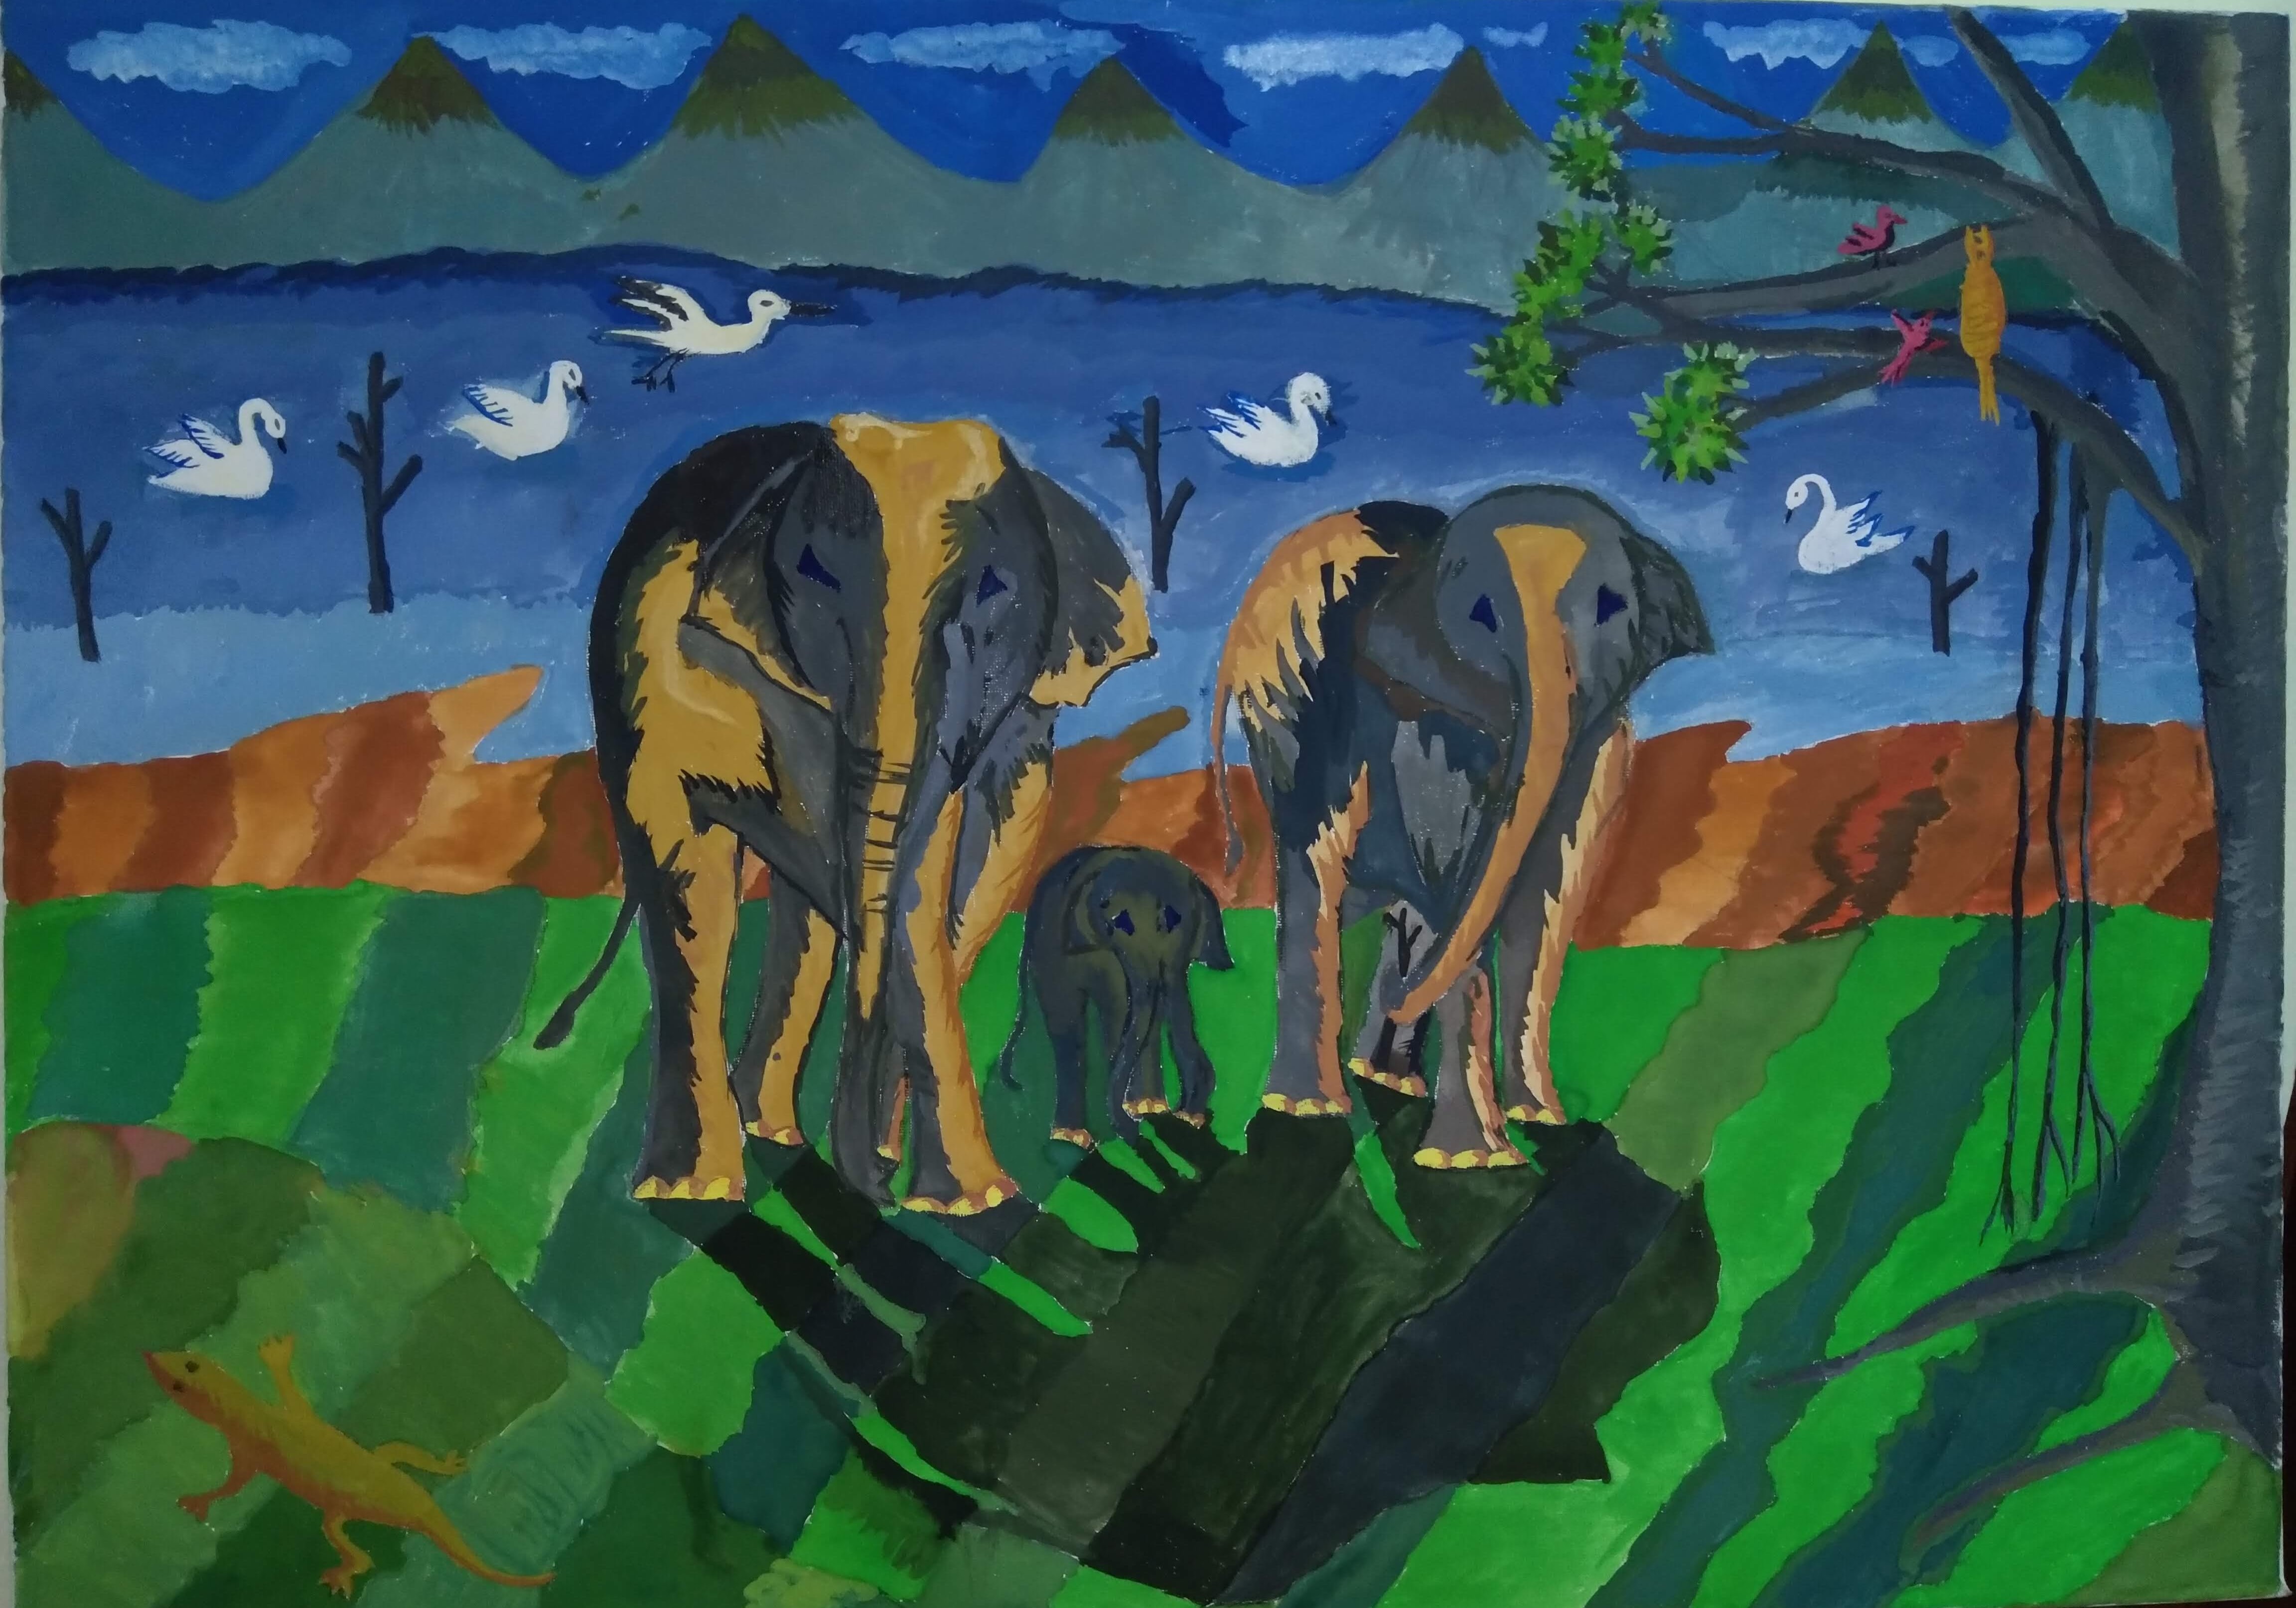 The Elephant Trio by Malinda Perera